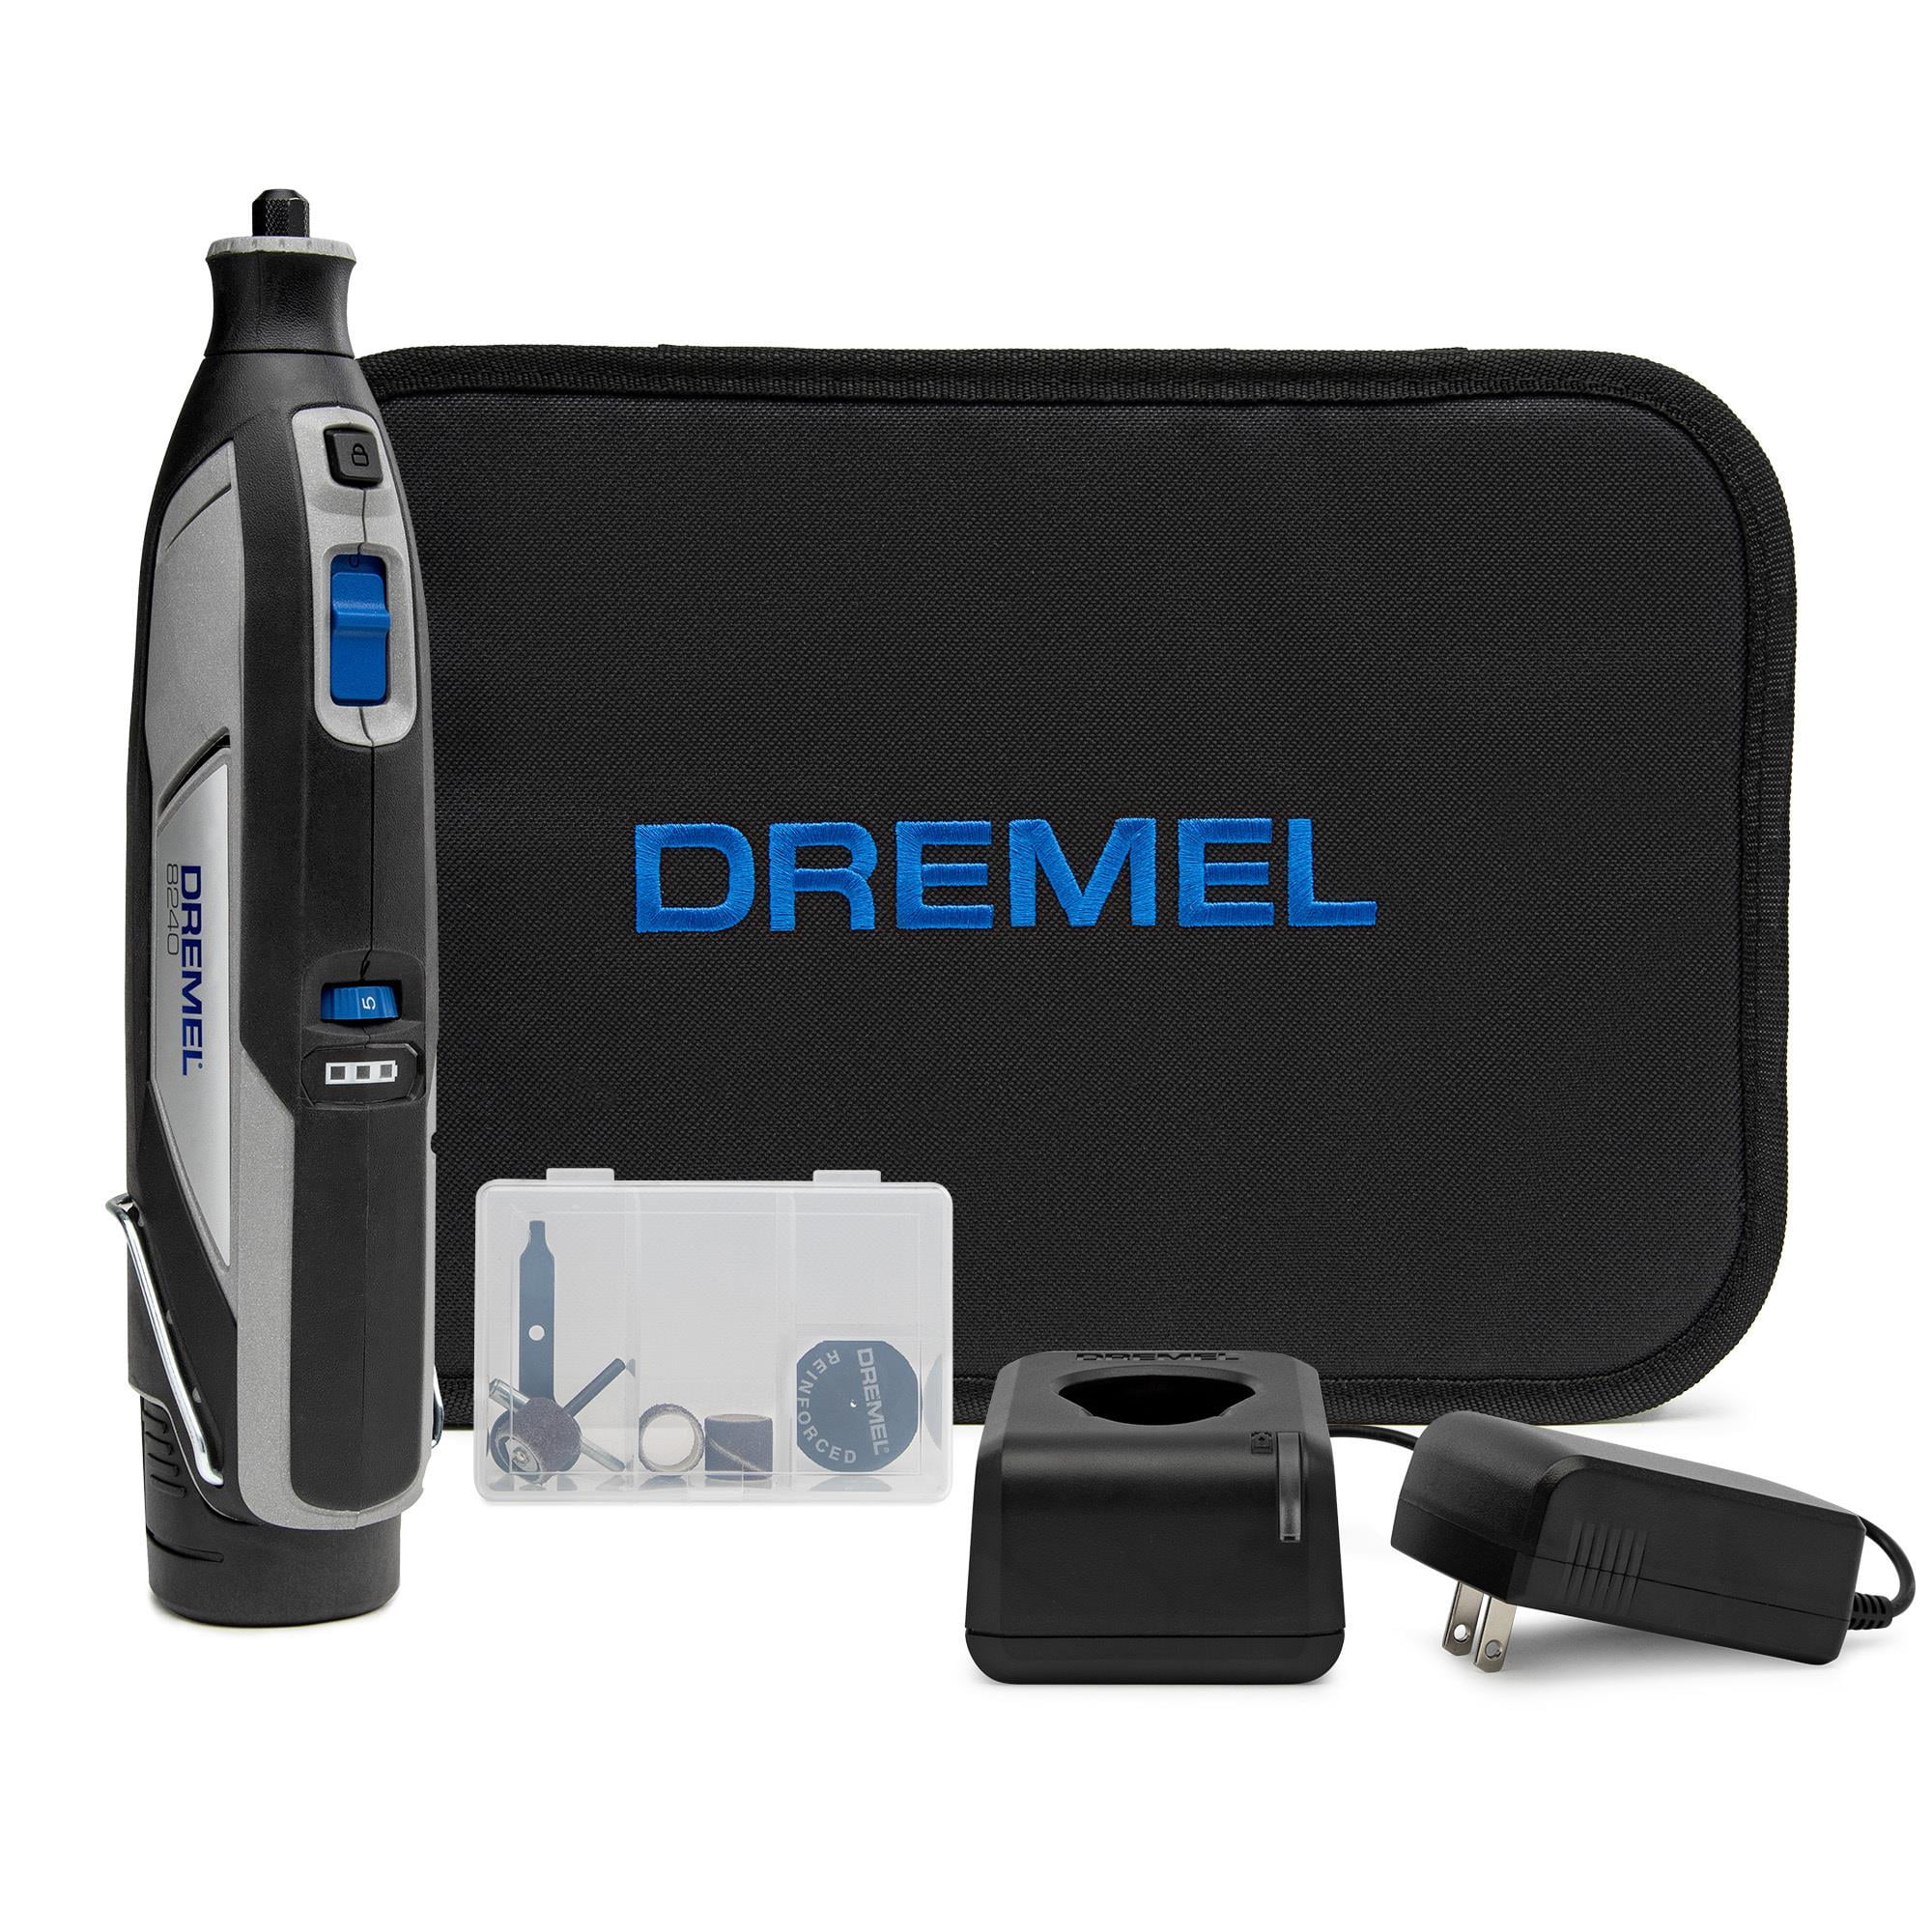 Dremel 8240 12V ‎5000 RPM Cordless Rotary Tool Kit - Black for sale online